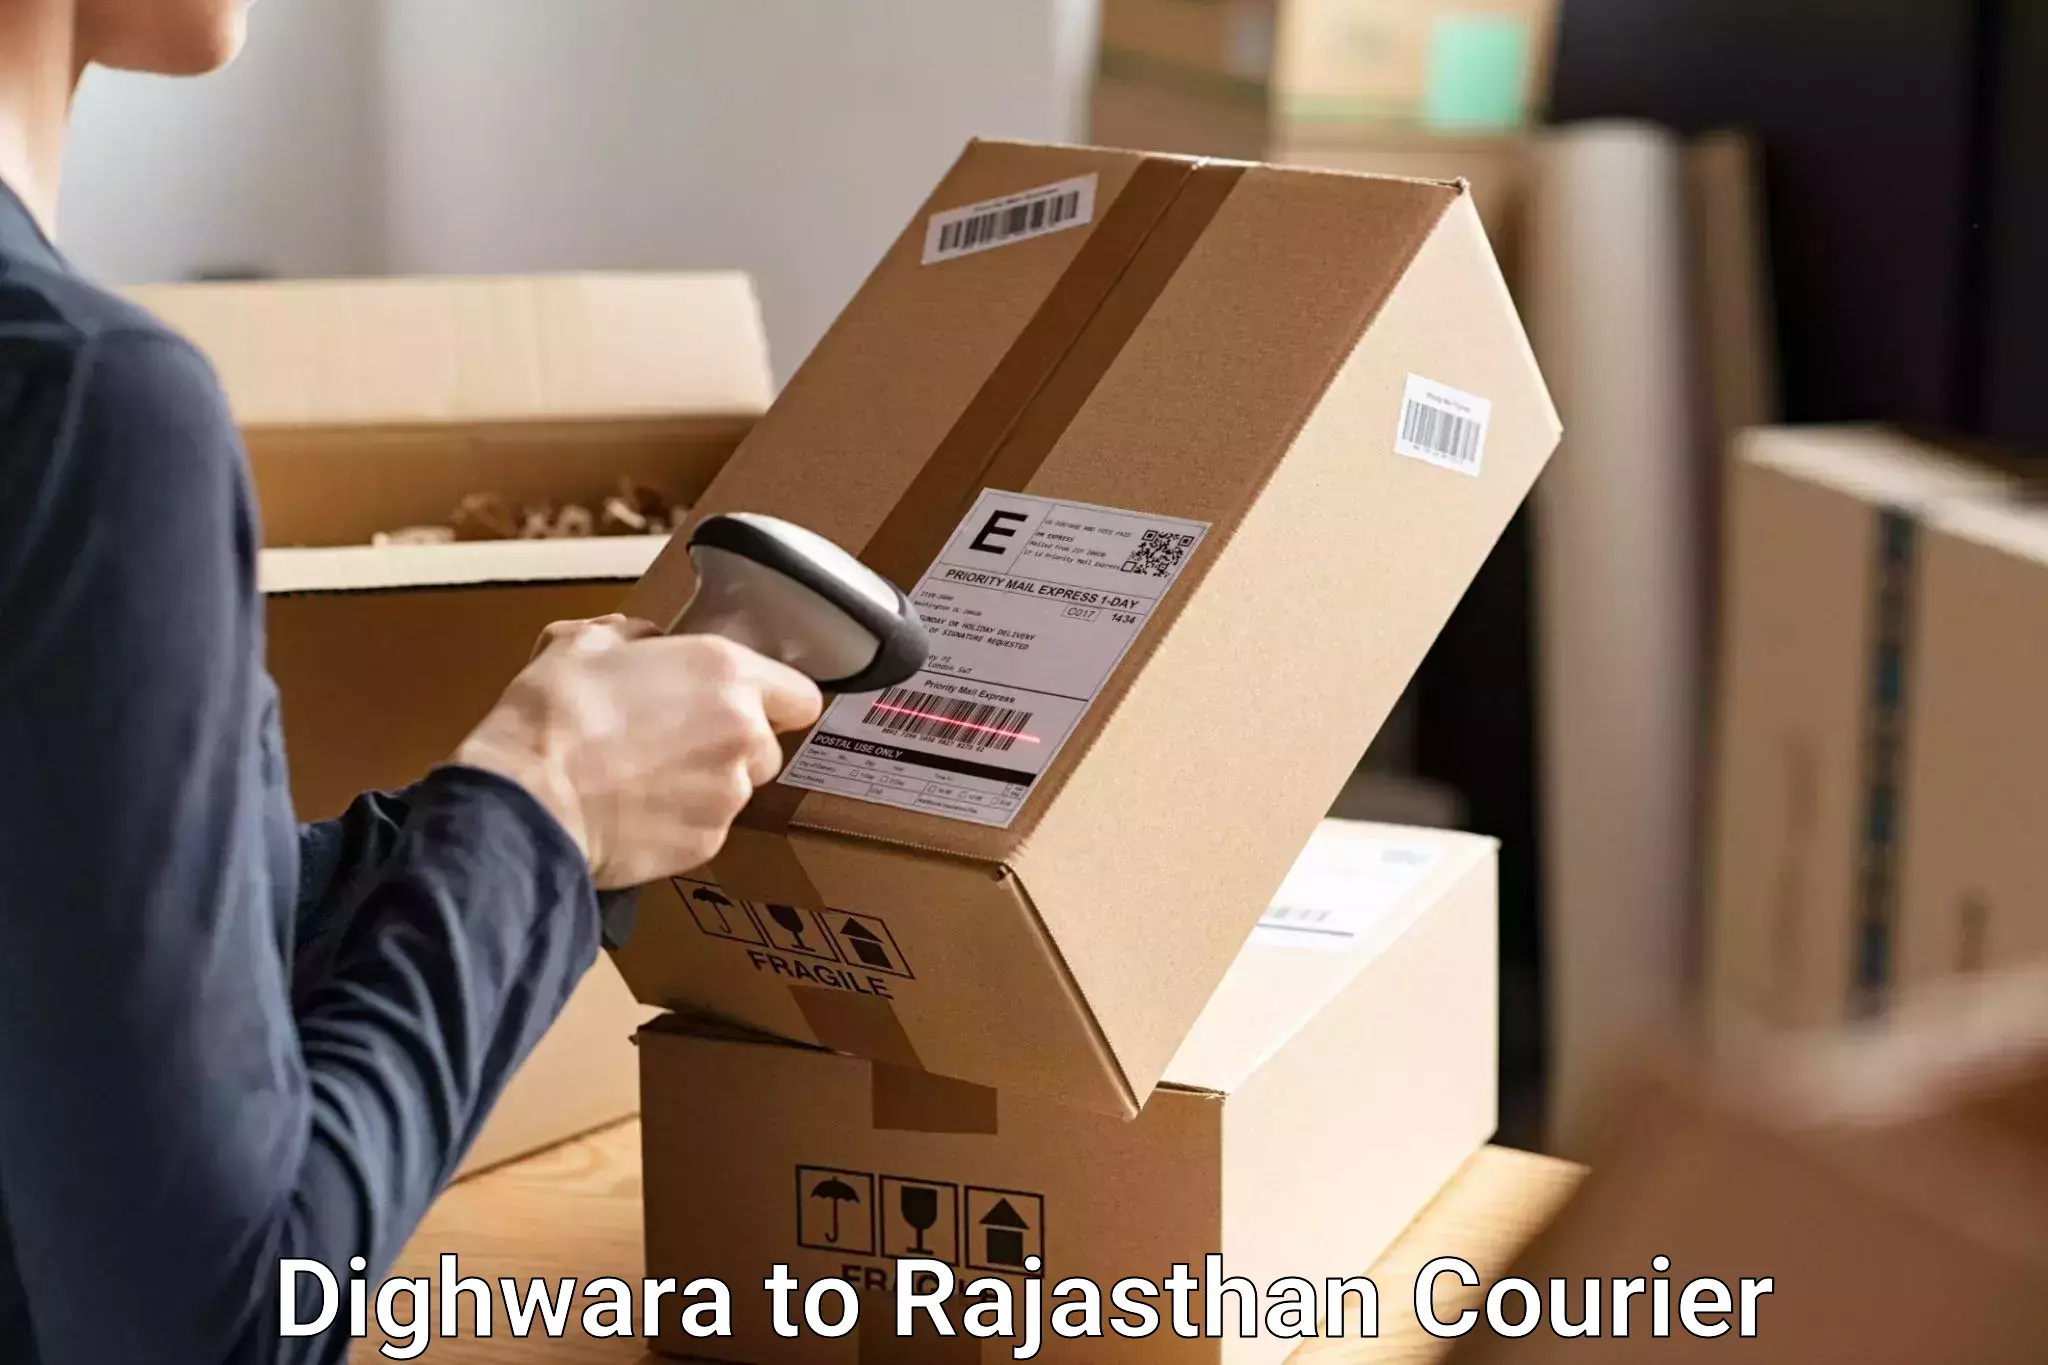 Luggage shipment tracking in Dighwara to Hanumangarh